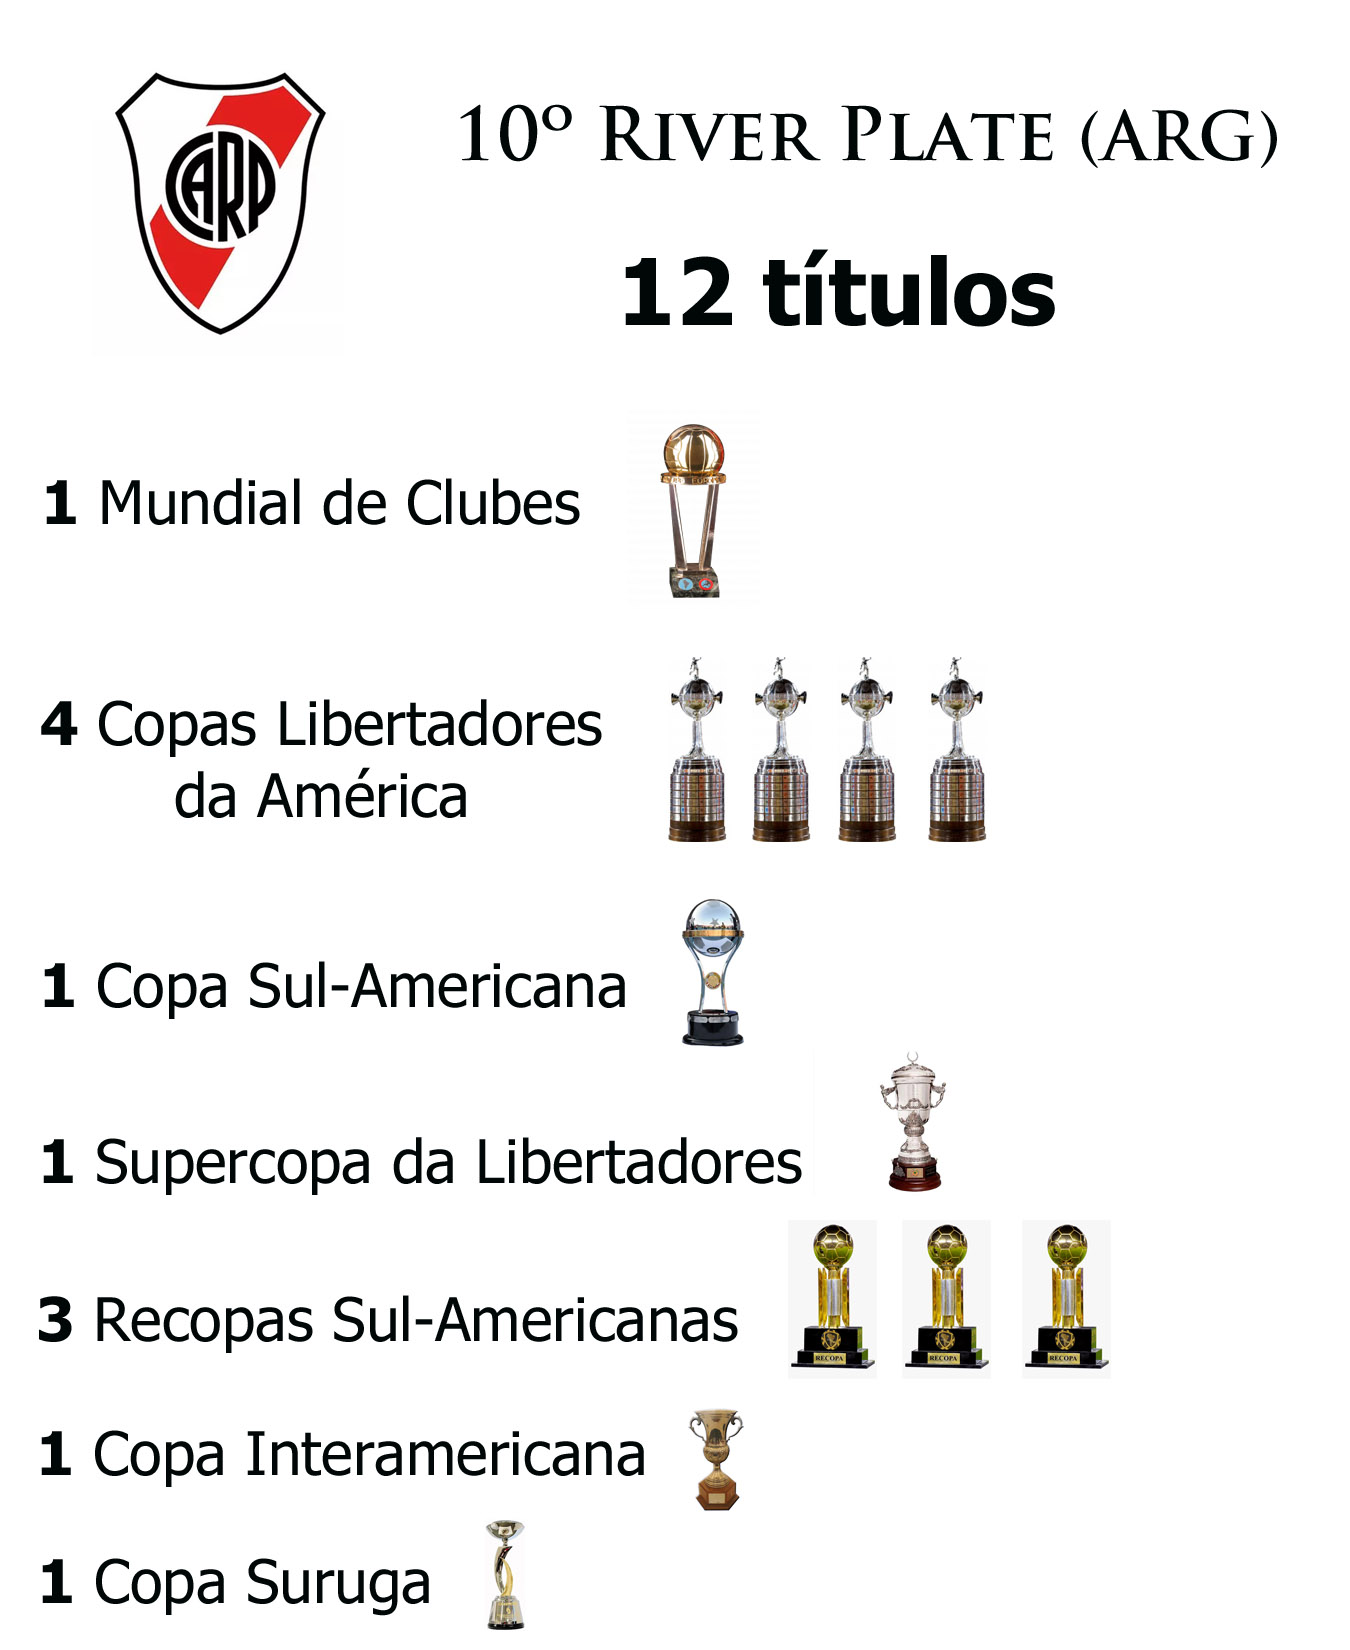 Clubes com mais títulos mundiais : r/futebol